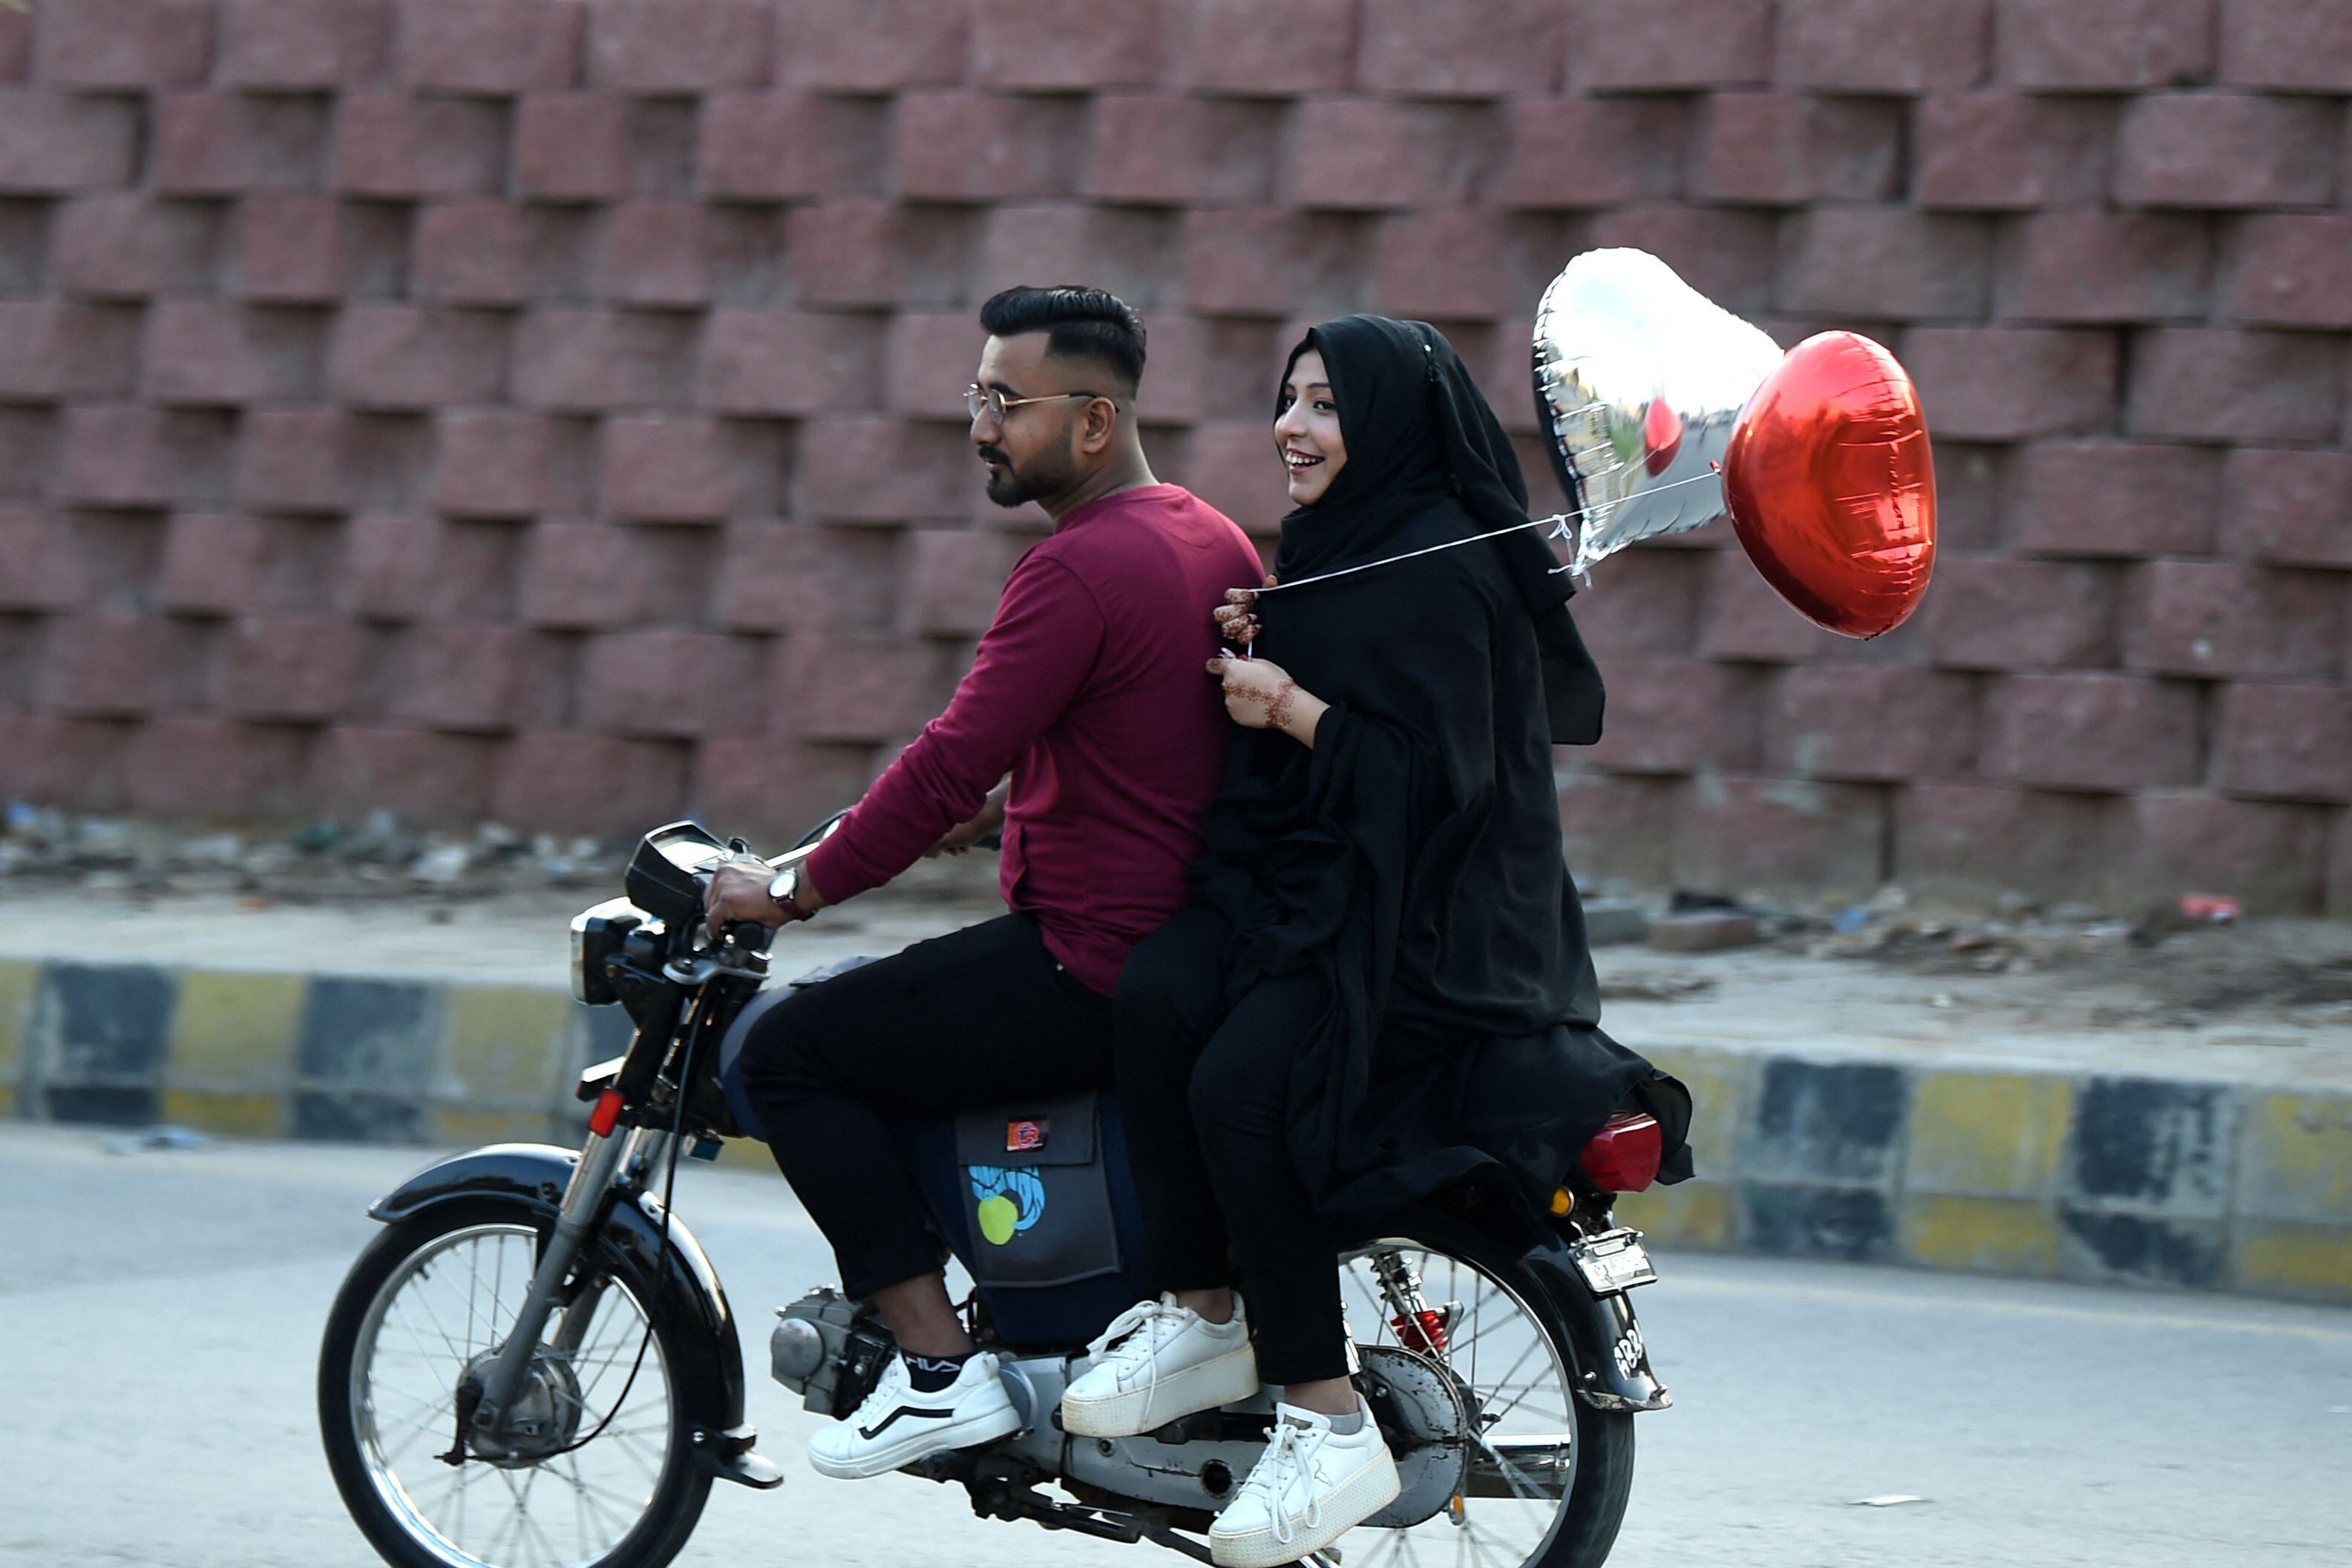 San Valentín es una celebración que no conoce fronteras. Esta pareja demostró su amor mientras viajaban en esta motocicleta en Karachi, Pakistán.




